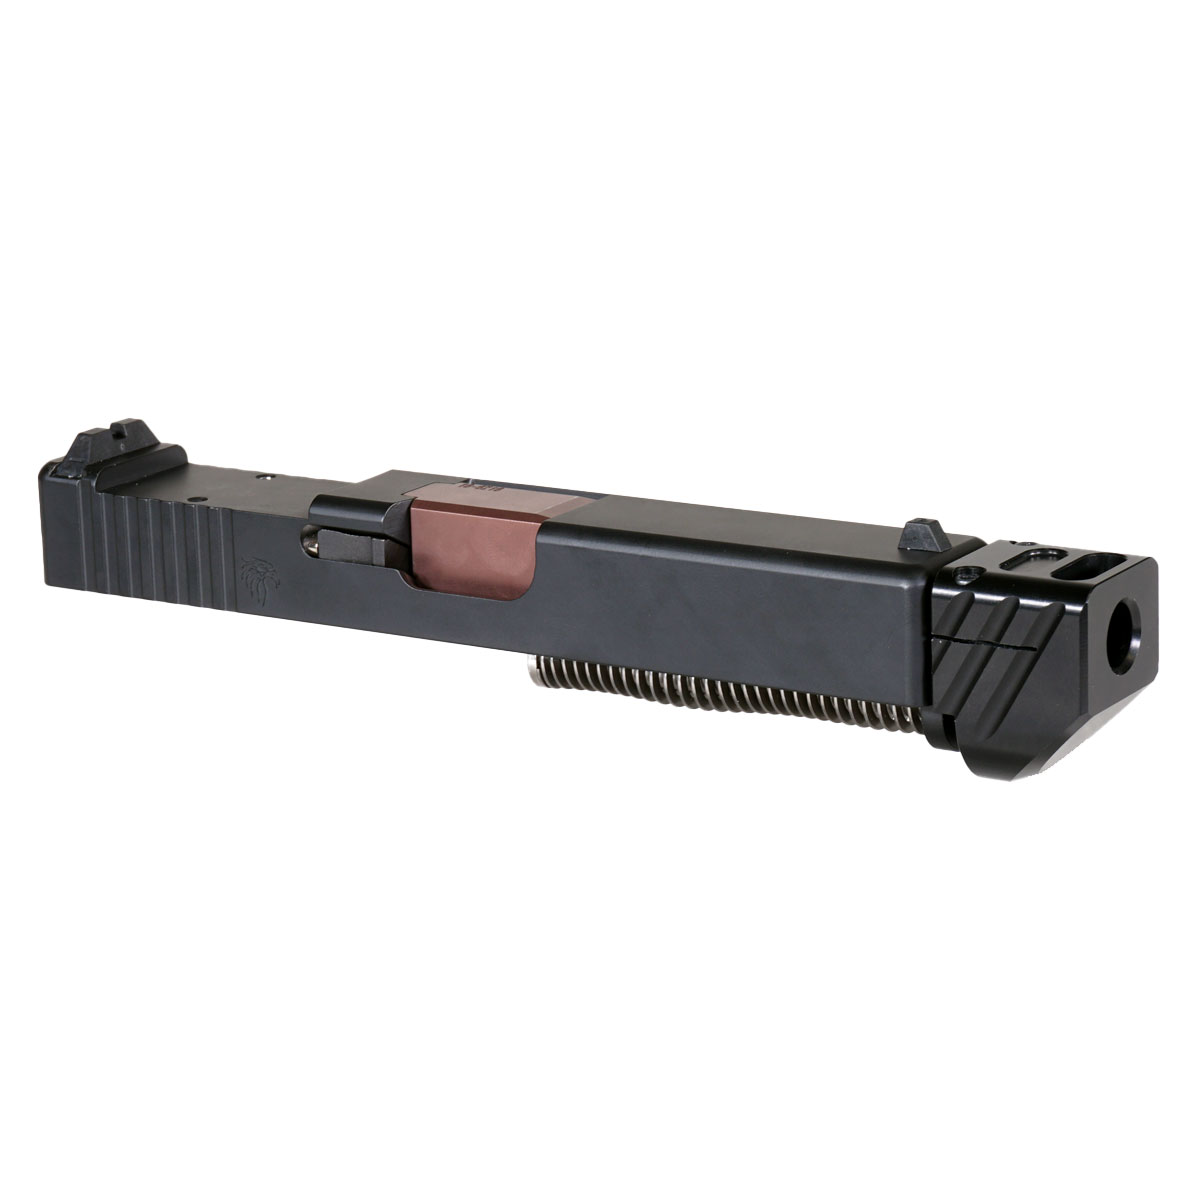 MMC 'Blockbuster V4 w/ Black Compensator' 9mm Complete Slide Kit - Glock 19 Gen 1-3 Compatible